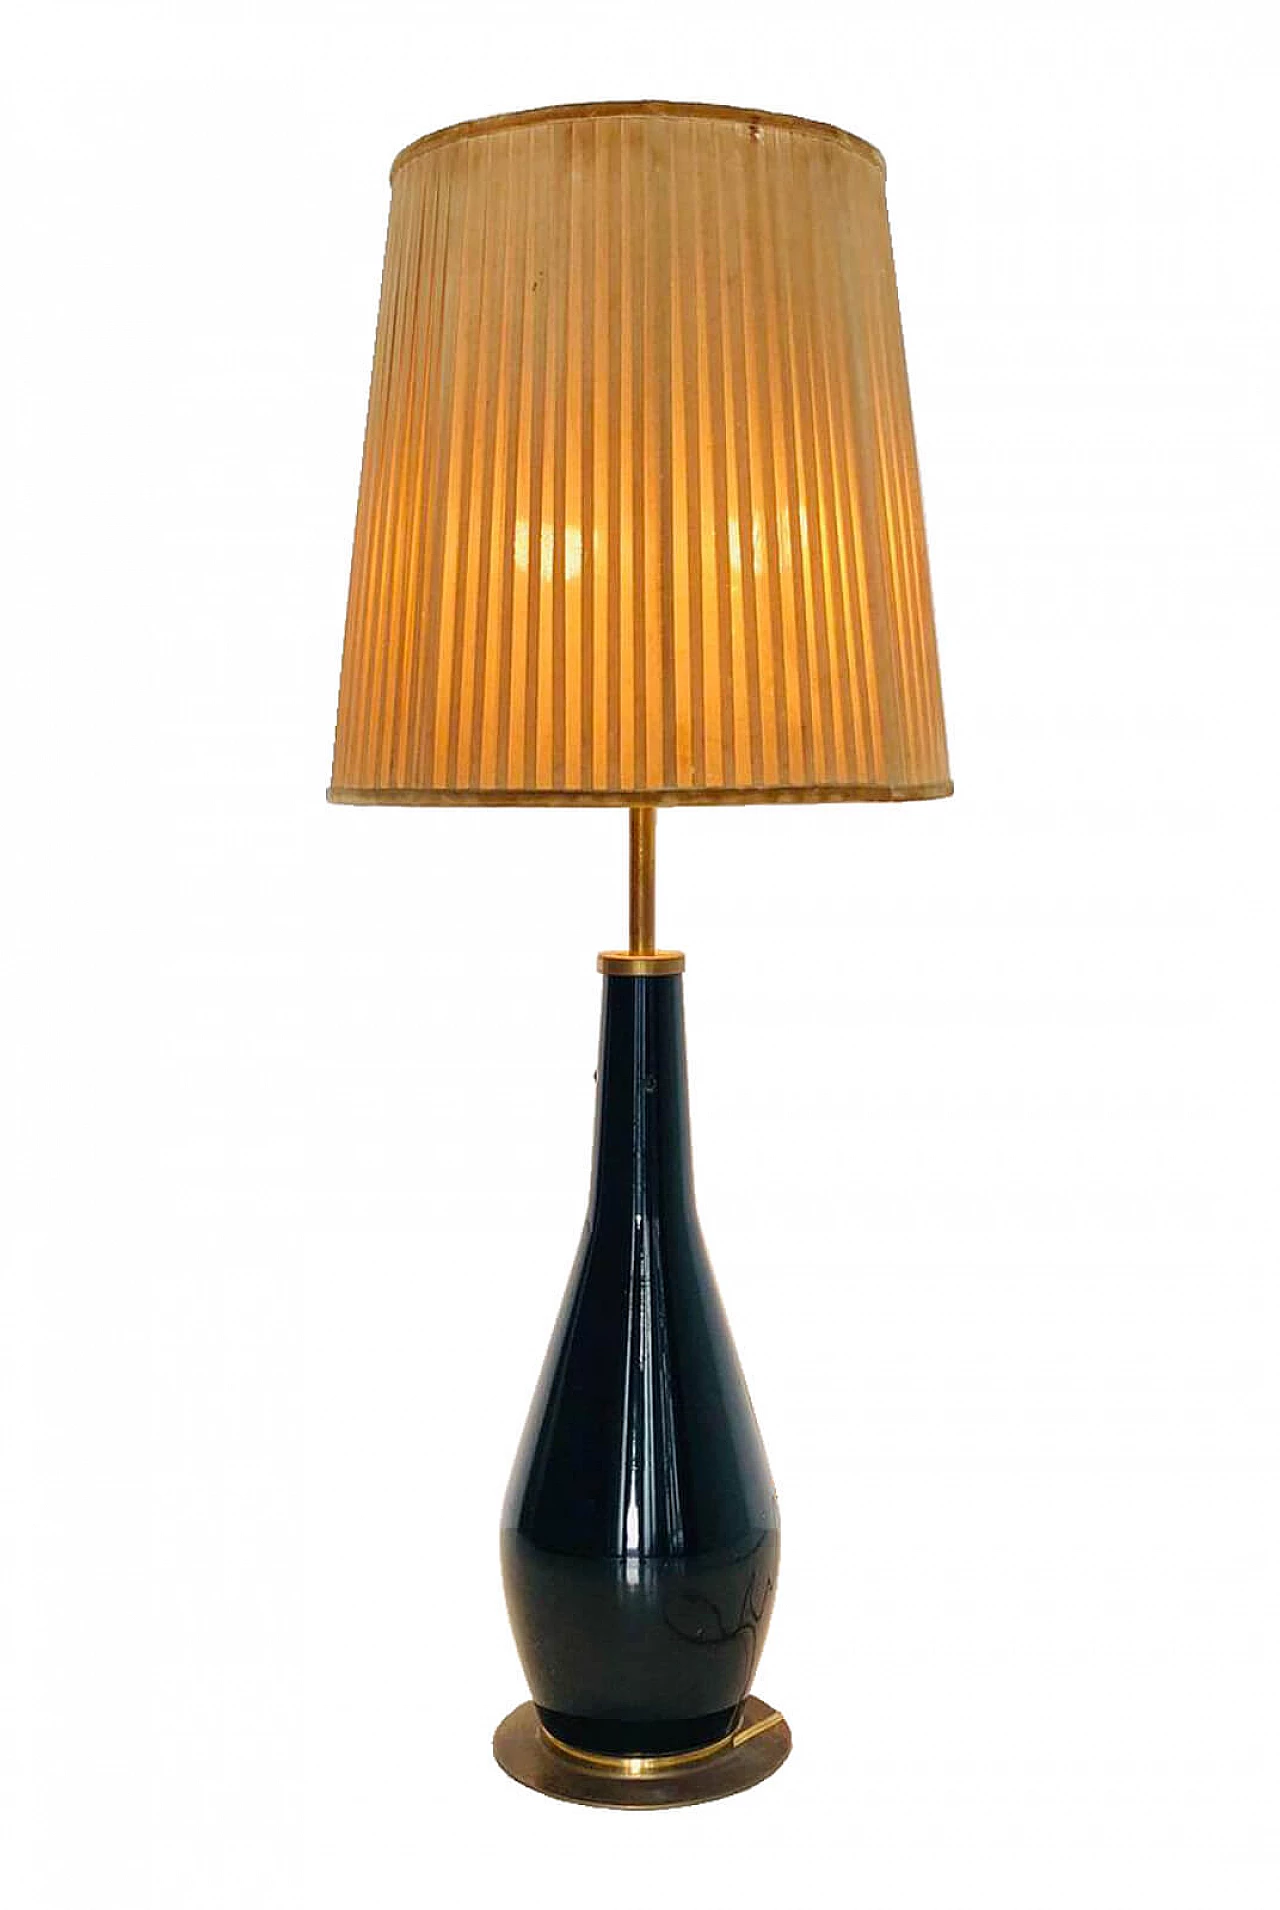 Table lamp, Stilnovo, 1950s 1070969